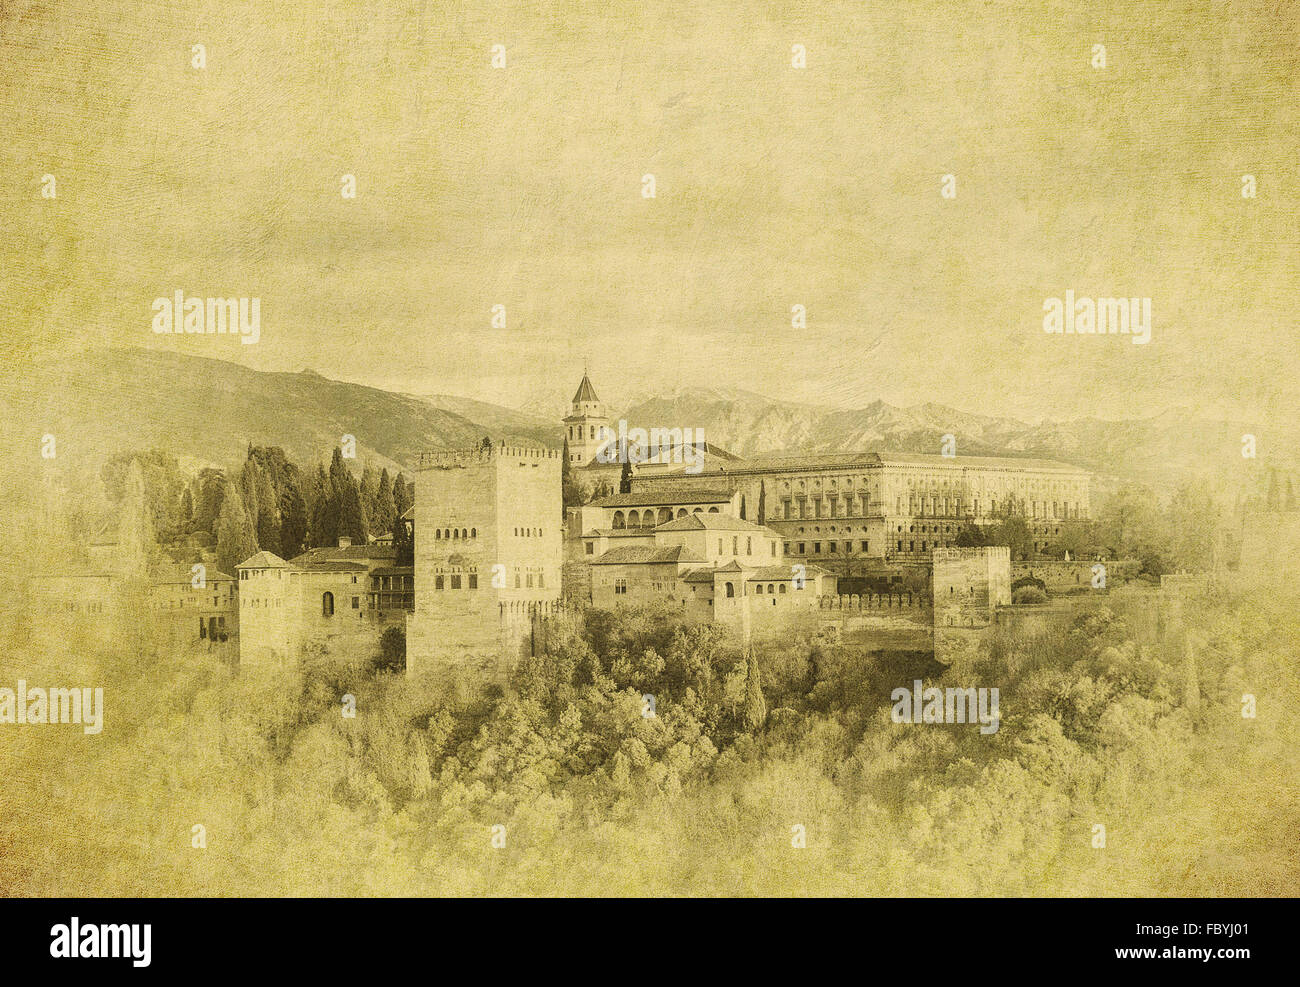 Vintage Bild von der Alhambra-Palast, Granada, Spanien Stockfoto